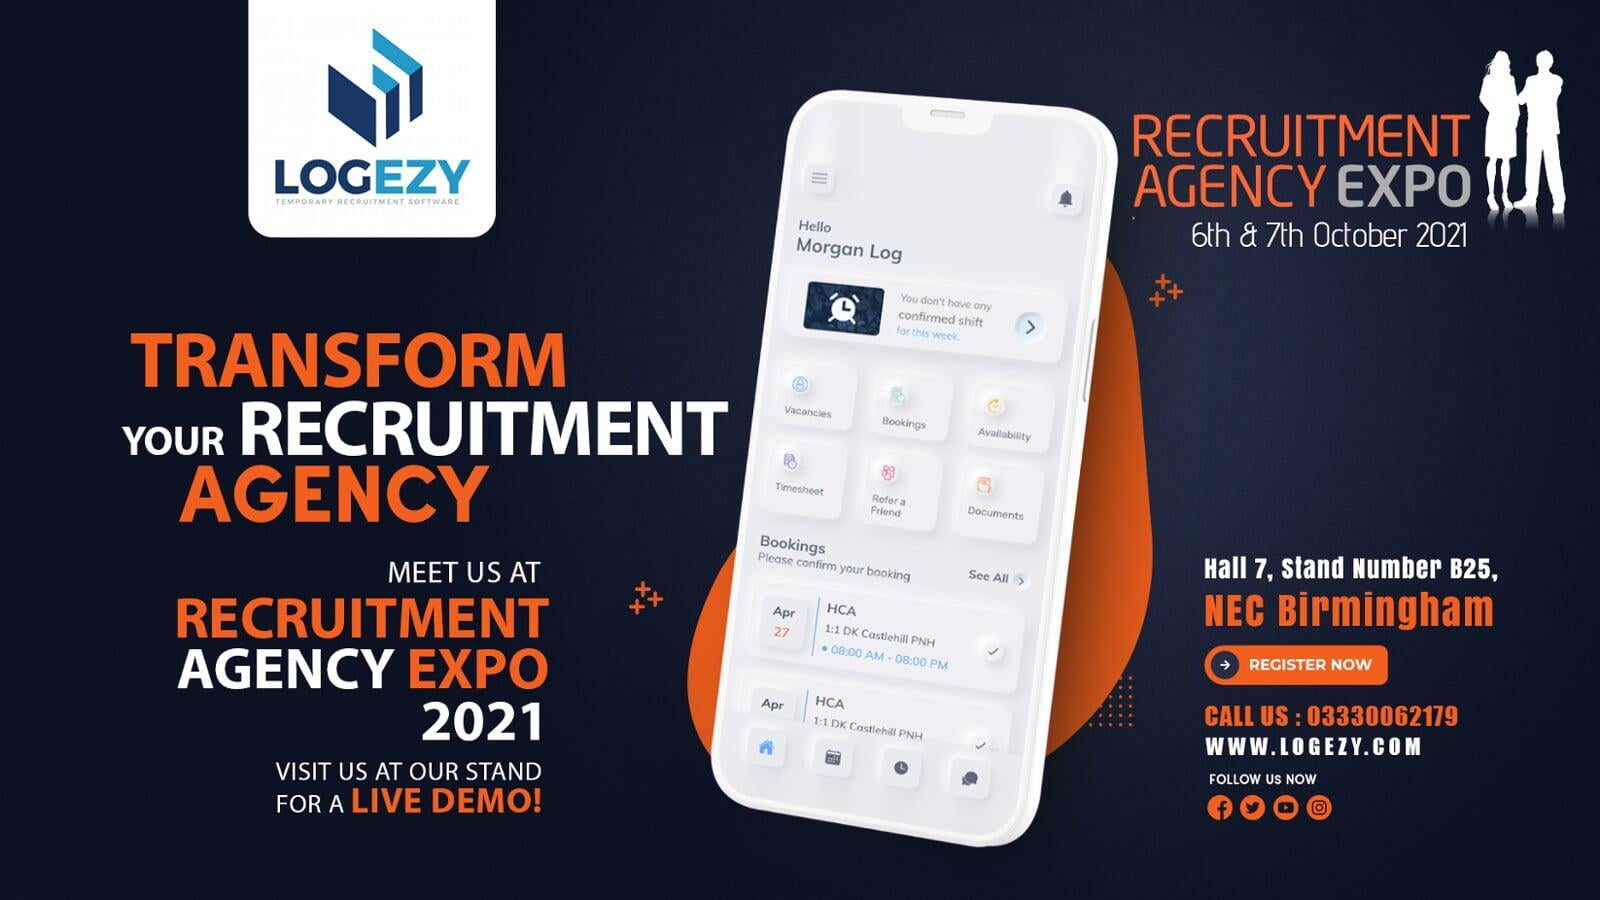 Recruitment Agency Expo 2021,  NEC Birmingham